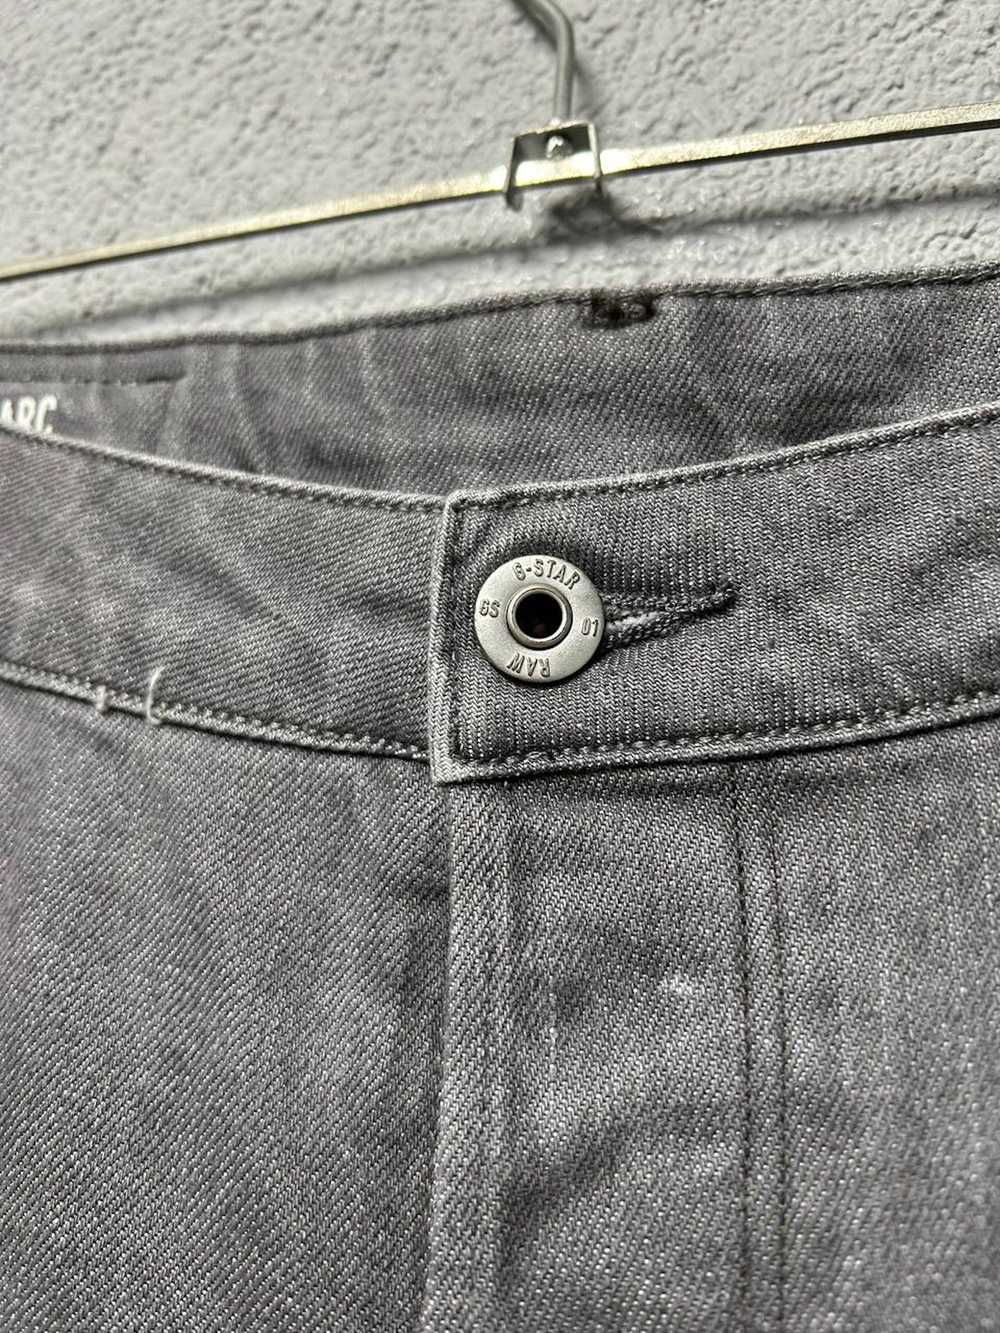 Gstar G Star Raw ARC 3d jeans mens W 30 L 34 - image 3